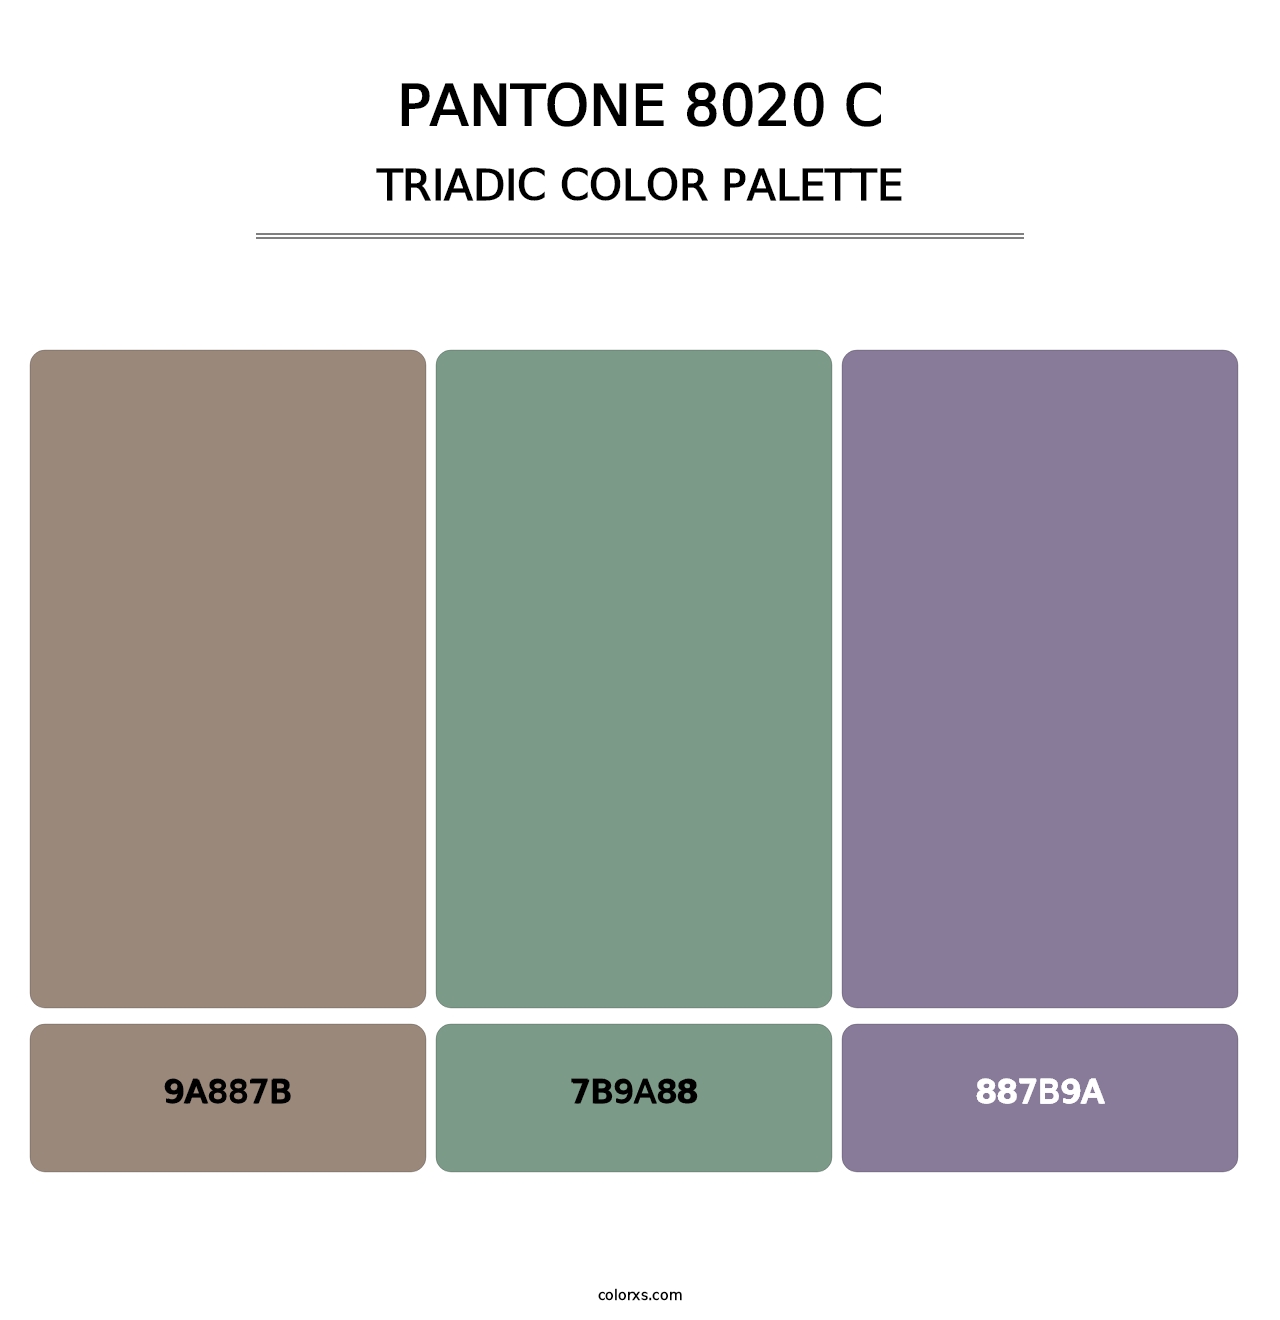 PANTONE 8020 C - Triadic Color Palette